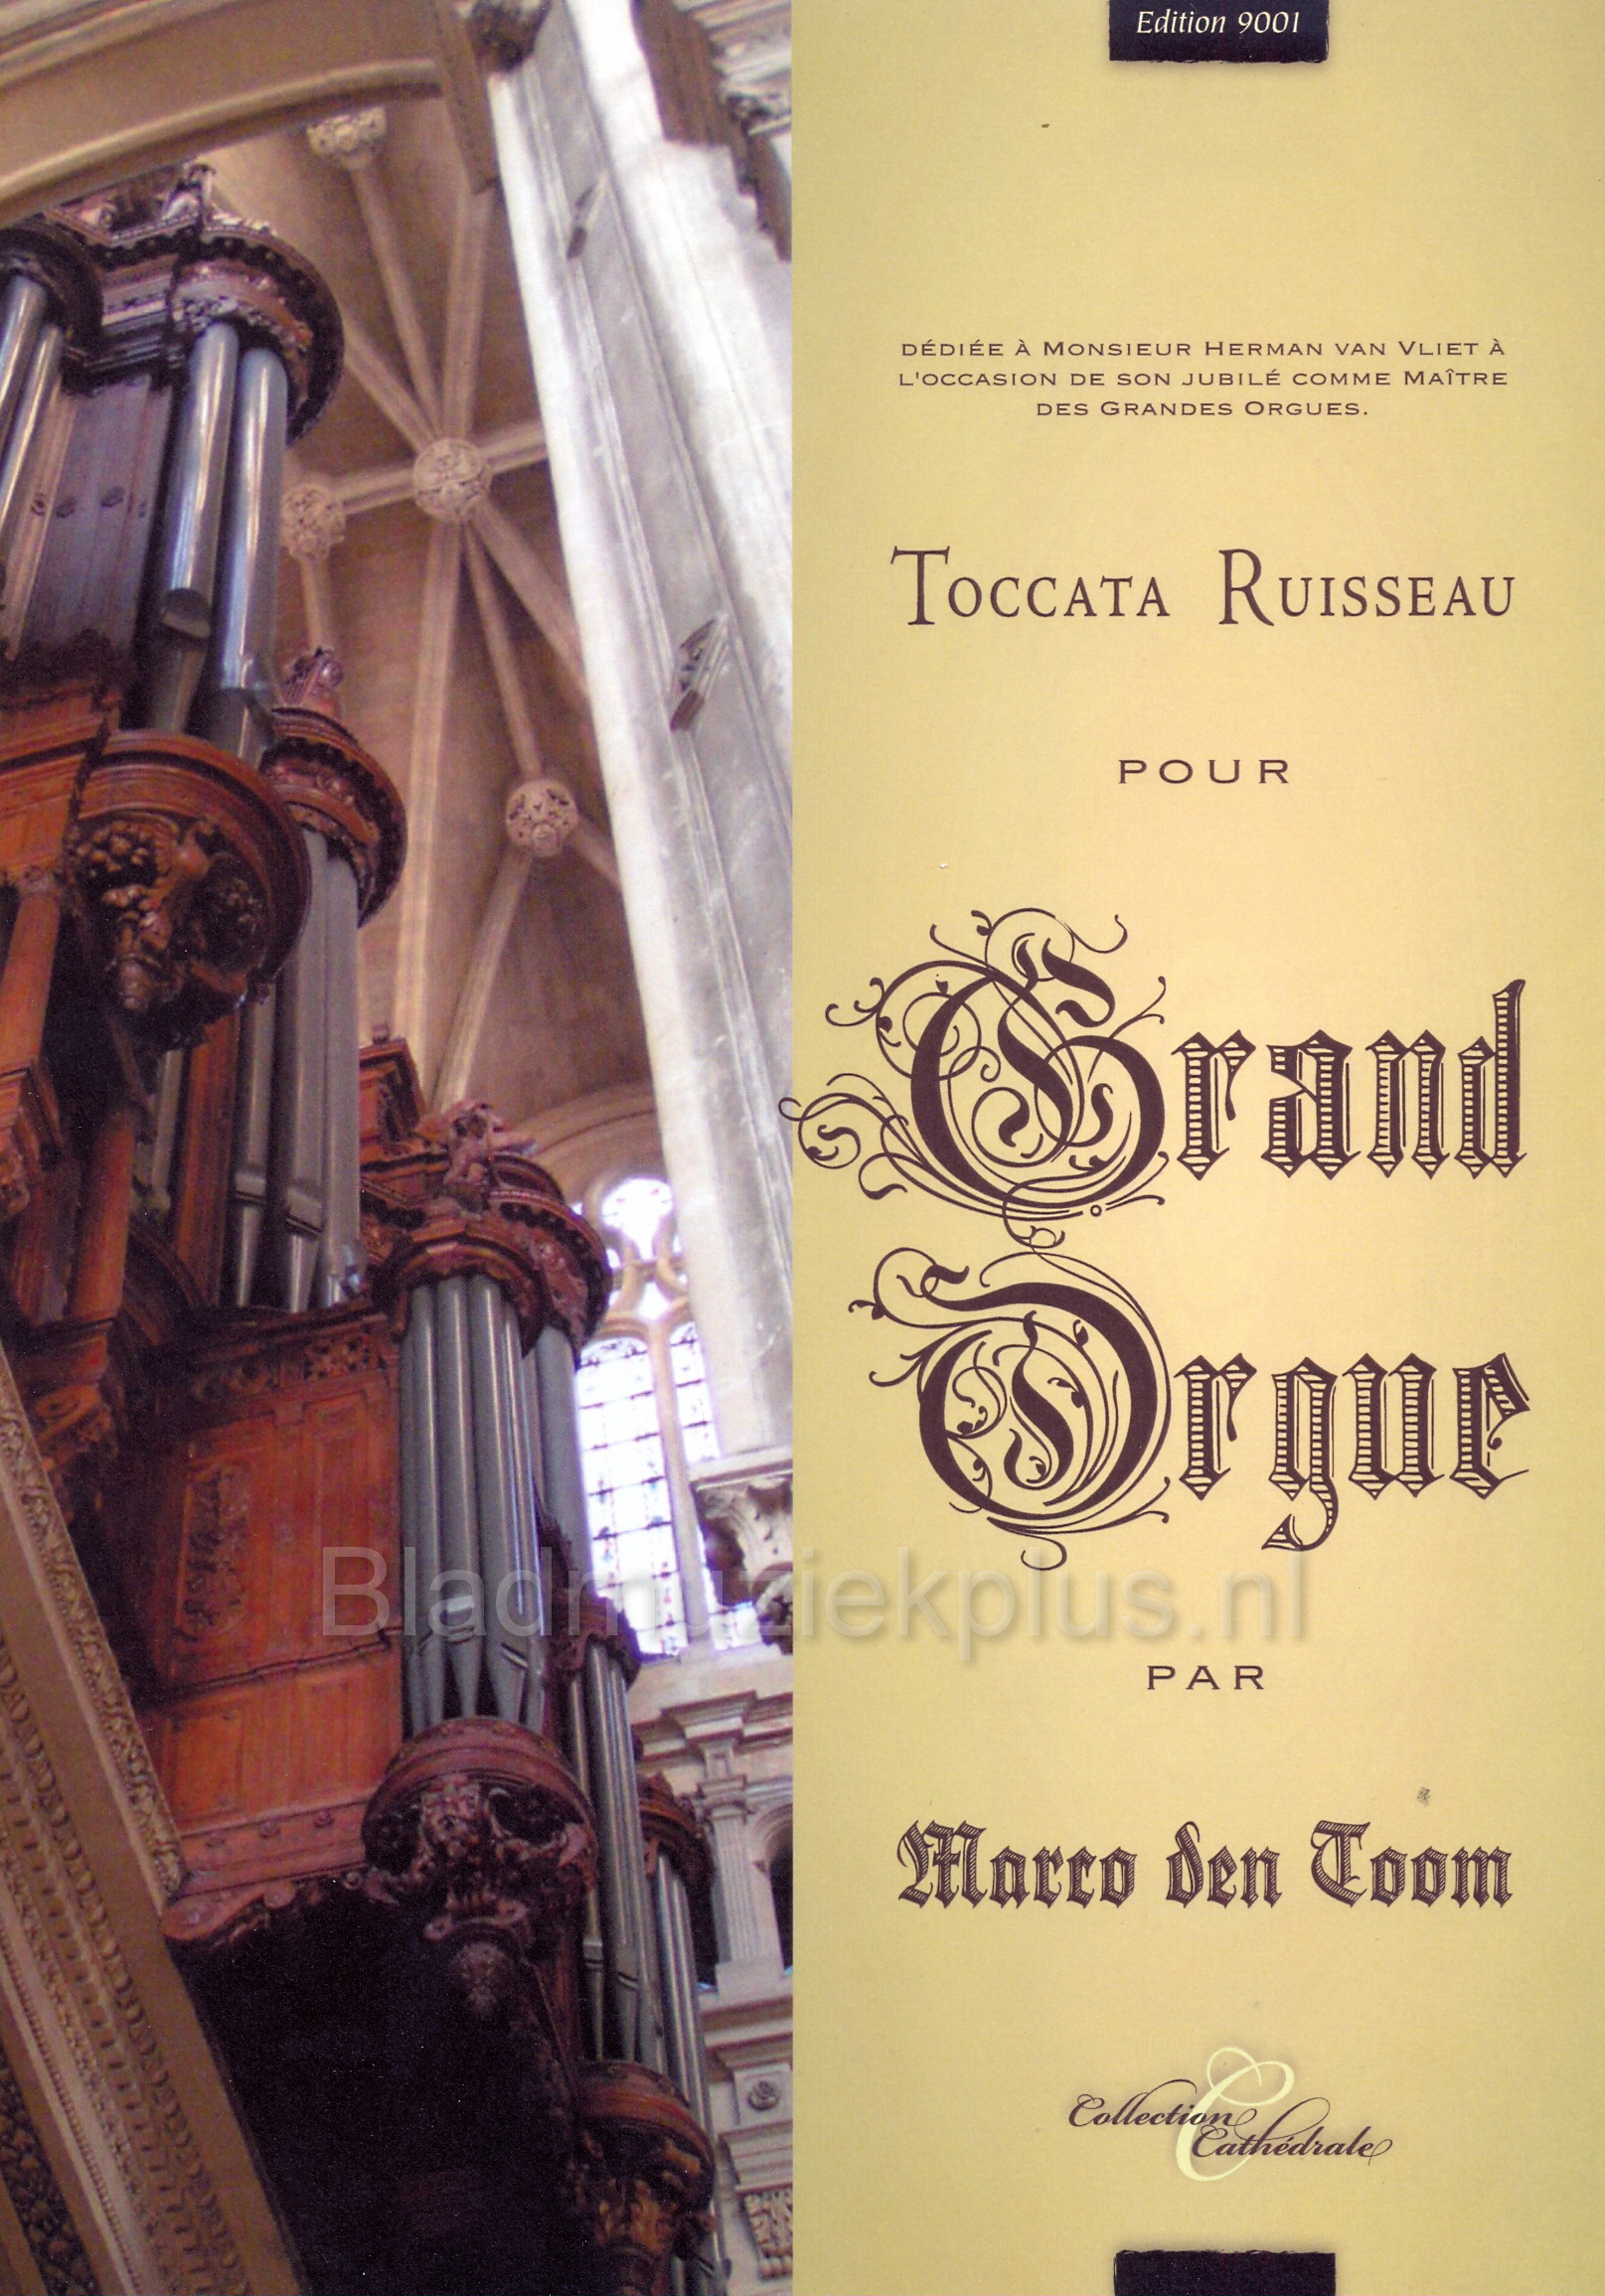 Marco den Toom: Toccata Ruisseau Pour Grand Orgue (Con Passione)